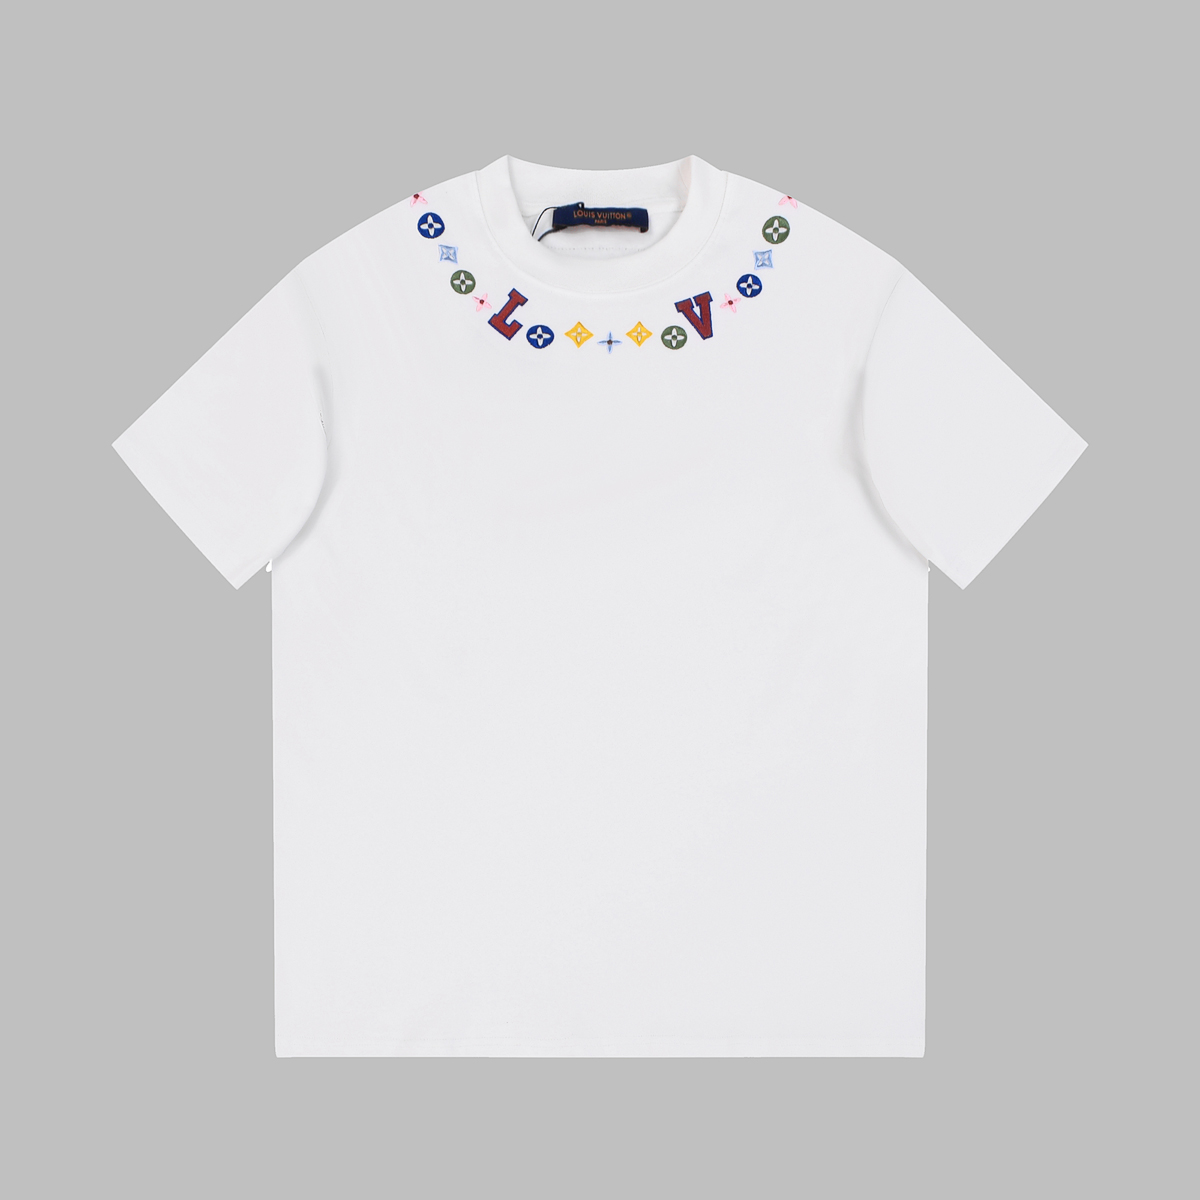 新款上新1V24ss高奢刺绣字母短袖T恤这款短袖也是路易家的代表性产物满身经典元素设计并采用刺绣的工艺配